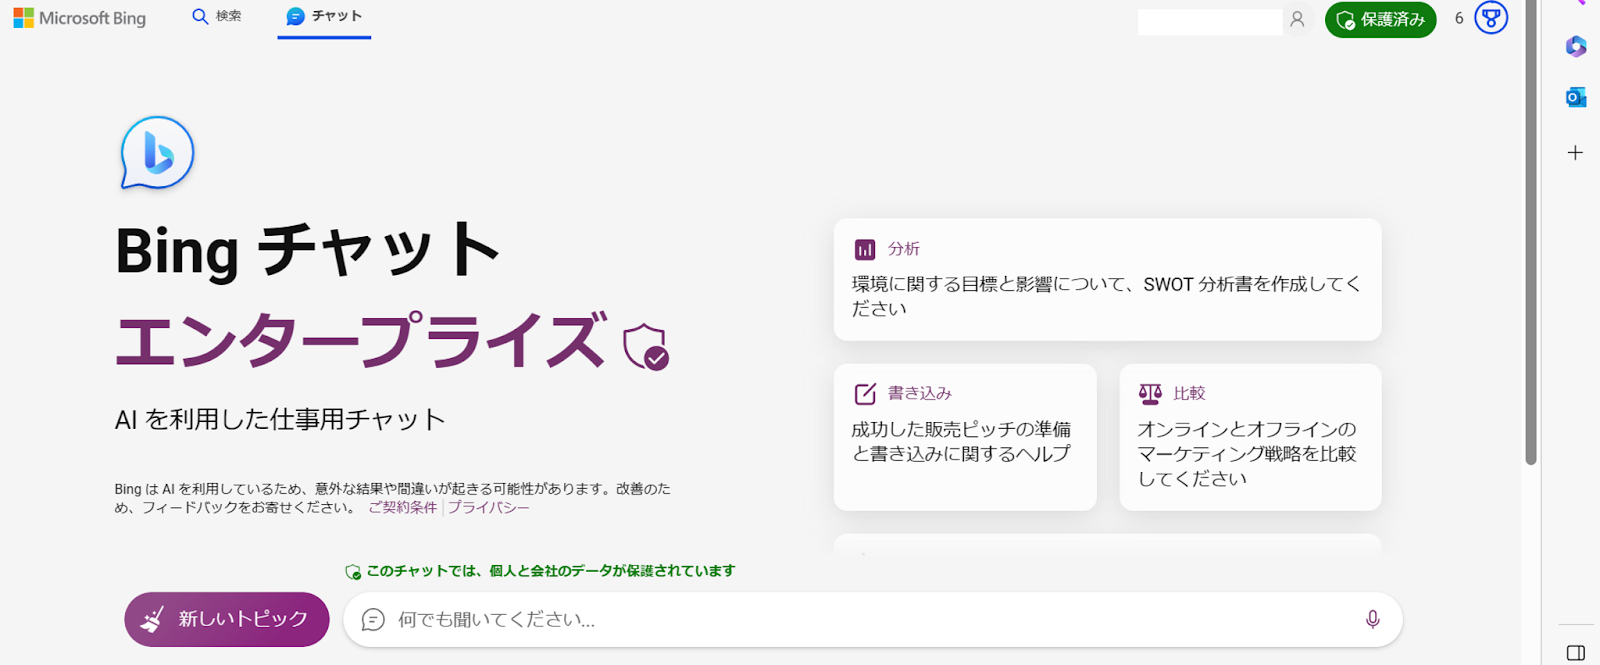 Bing Chat Enterprise画面